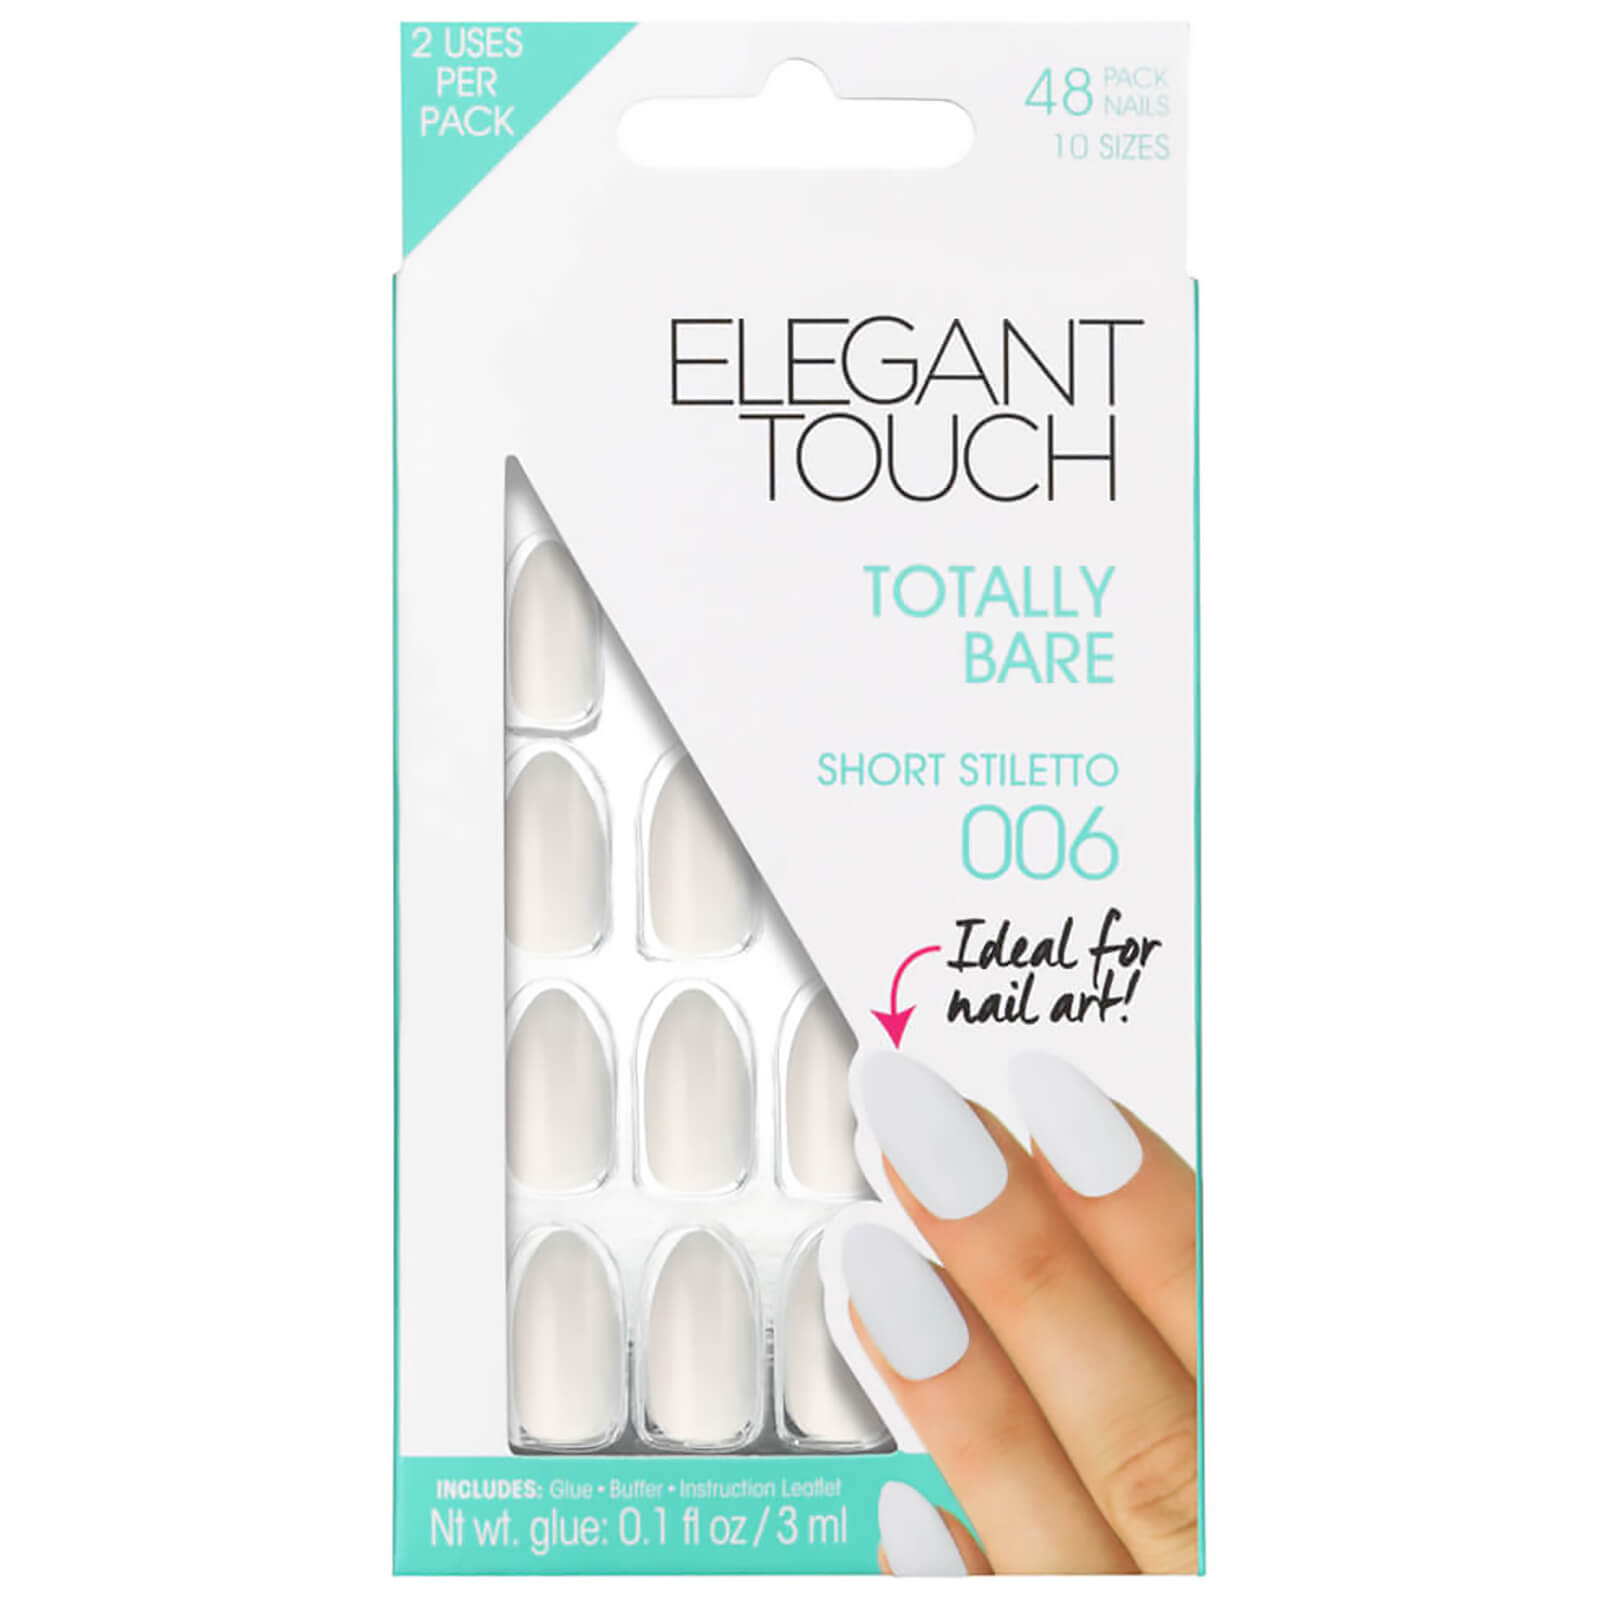 Elegant Touch Total Bare Nails - Short Stiletto 006 von Elegant Touch